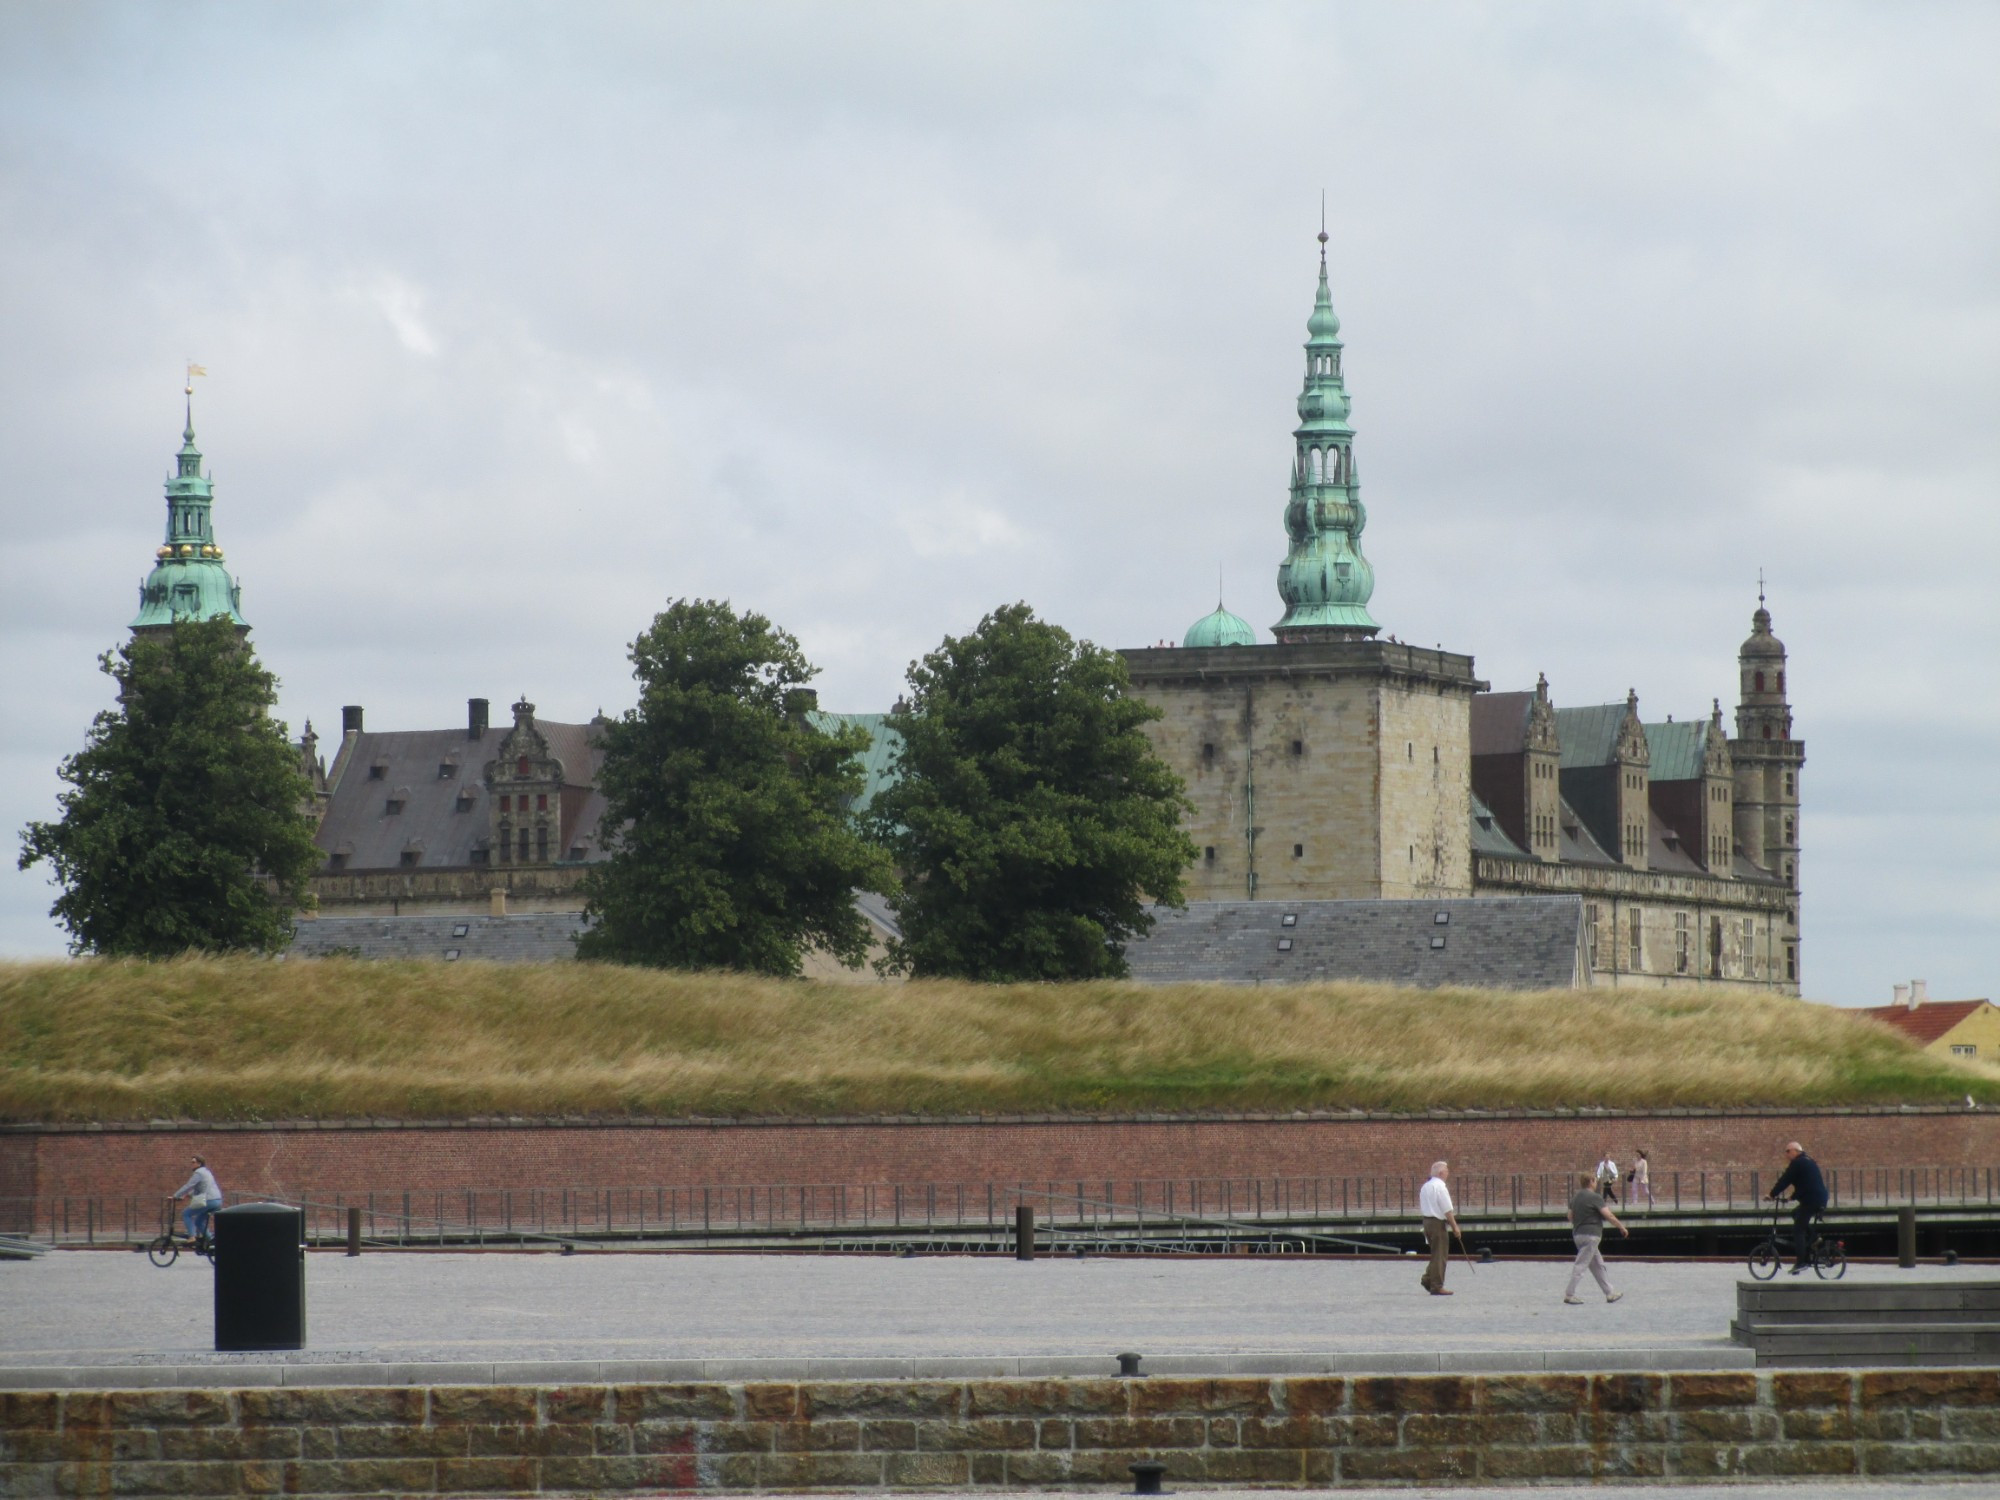 Хельсингёр. Вид на замок Кронборг. (14.07.2013)